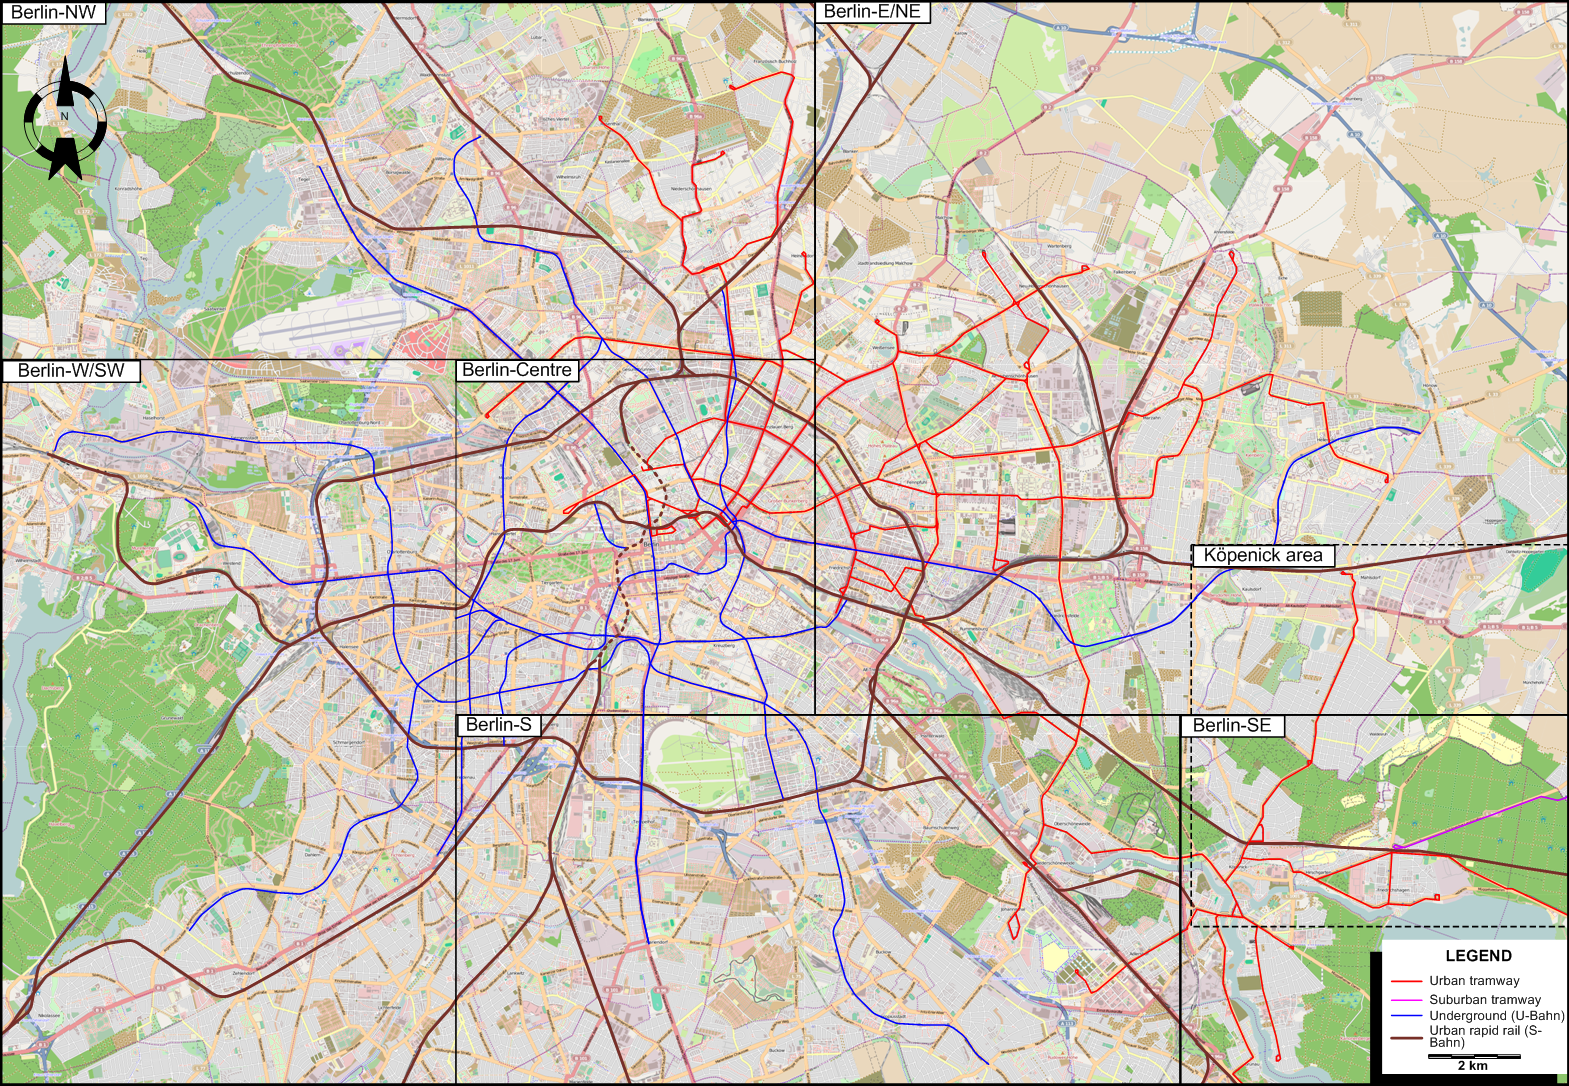 Berlin 2014 tram map